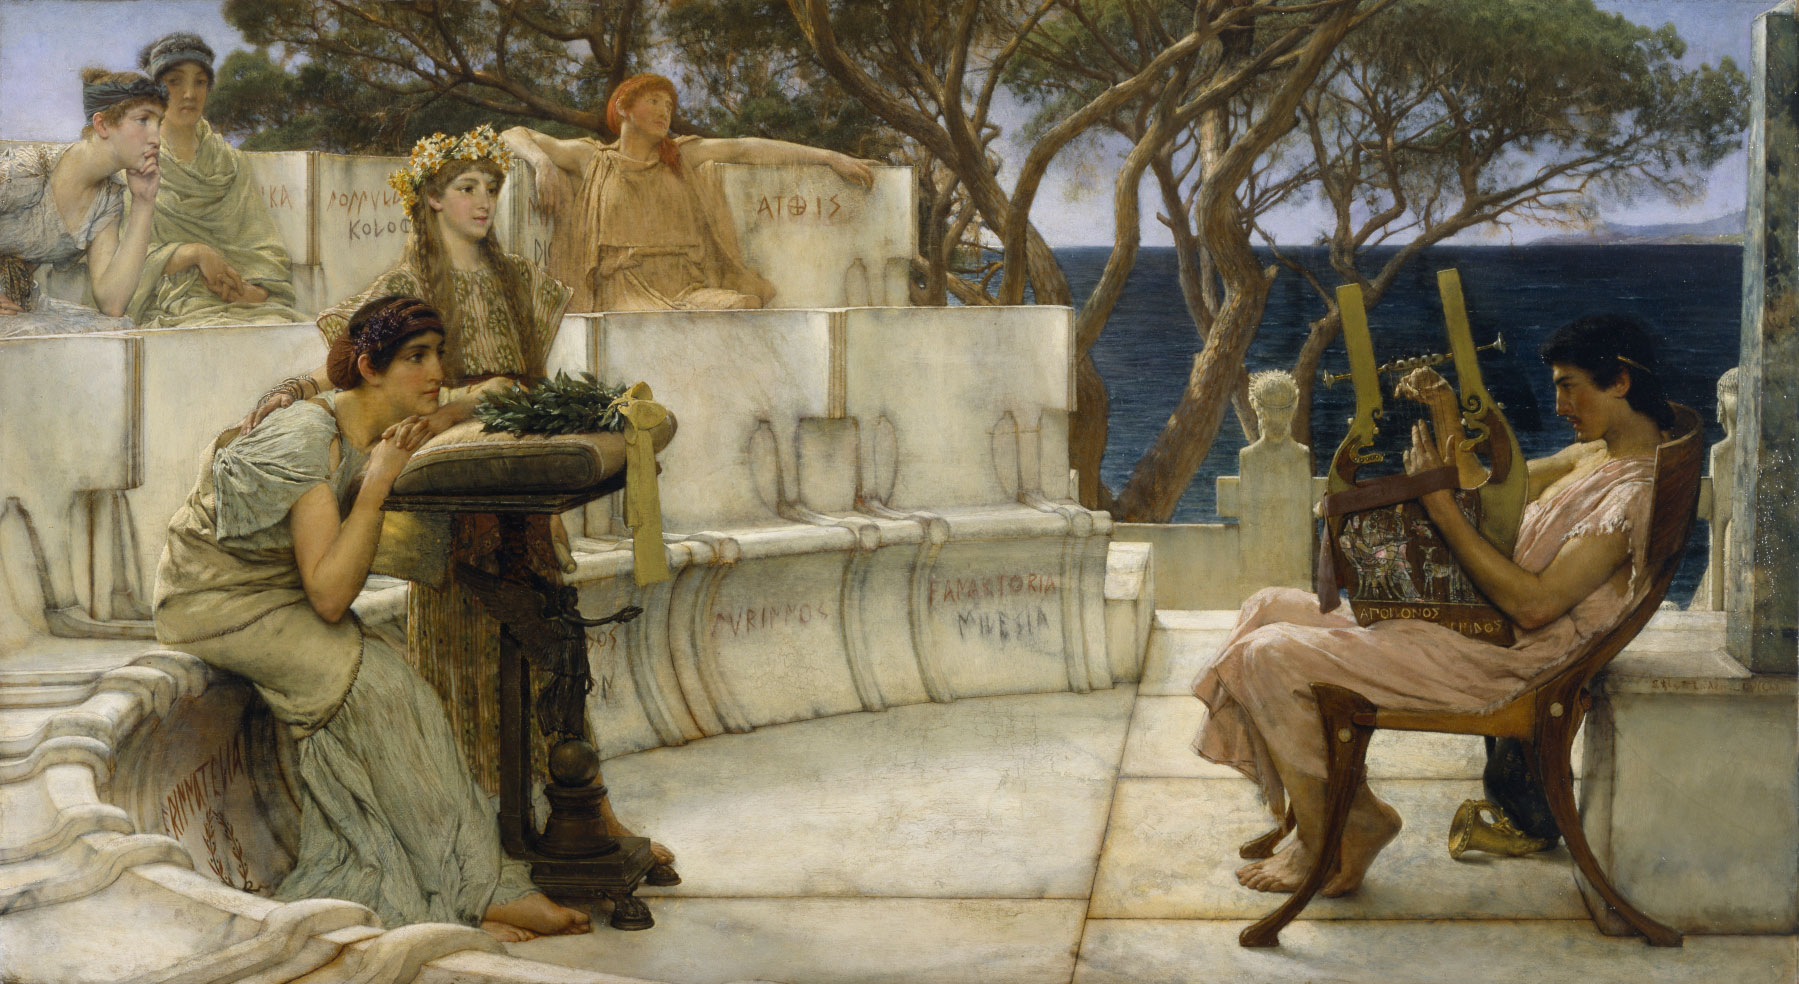 αρχαίος Έλληνας παίζει άρπα και γυναίκες σε μικρό θέατρο να παρακολουθούν